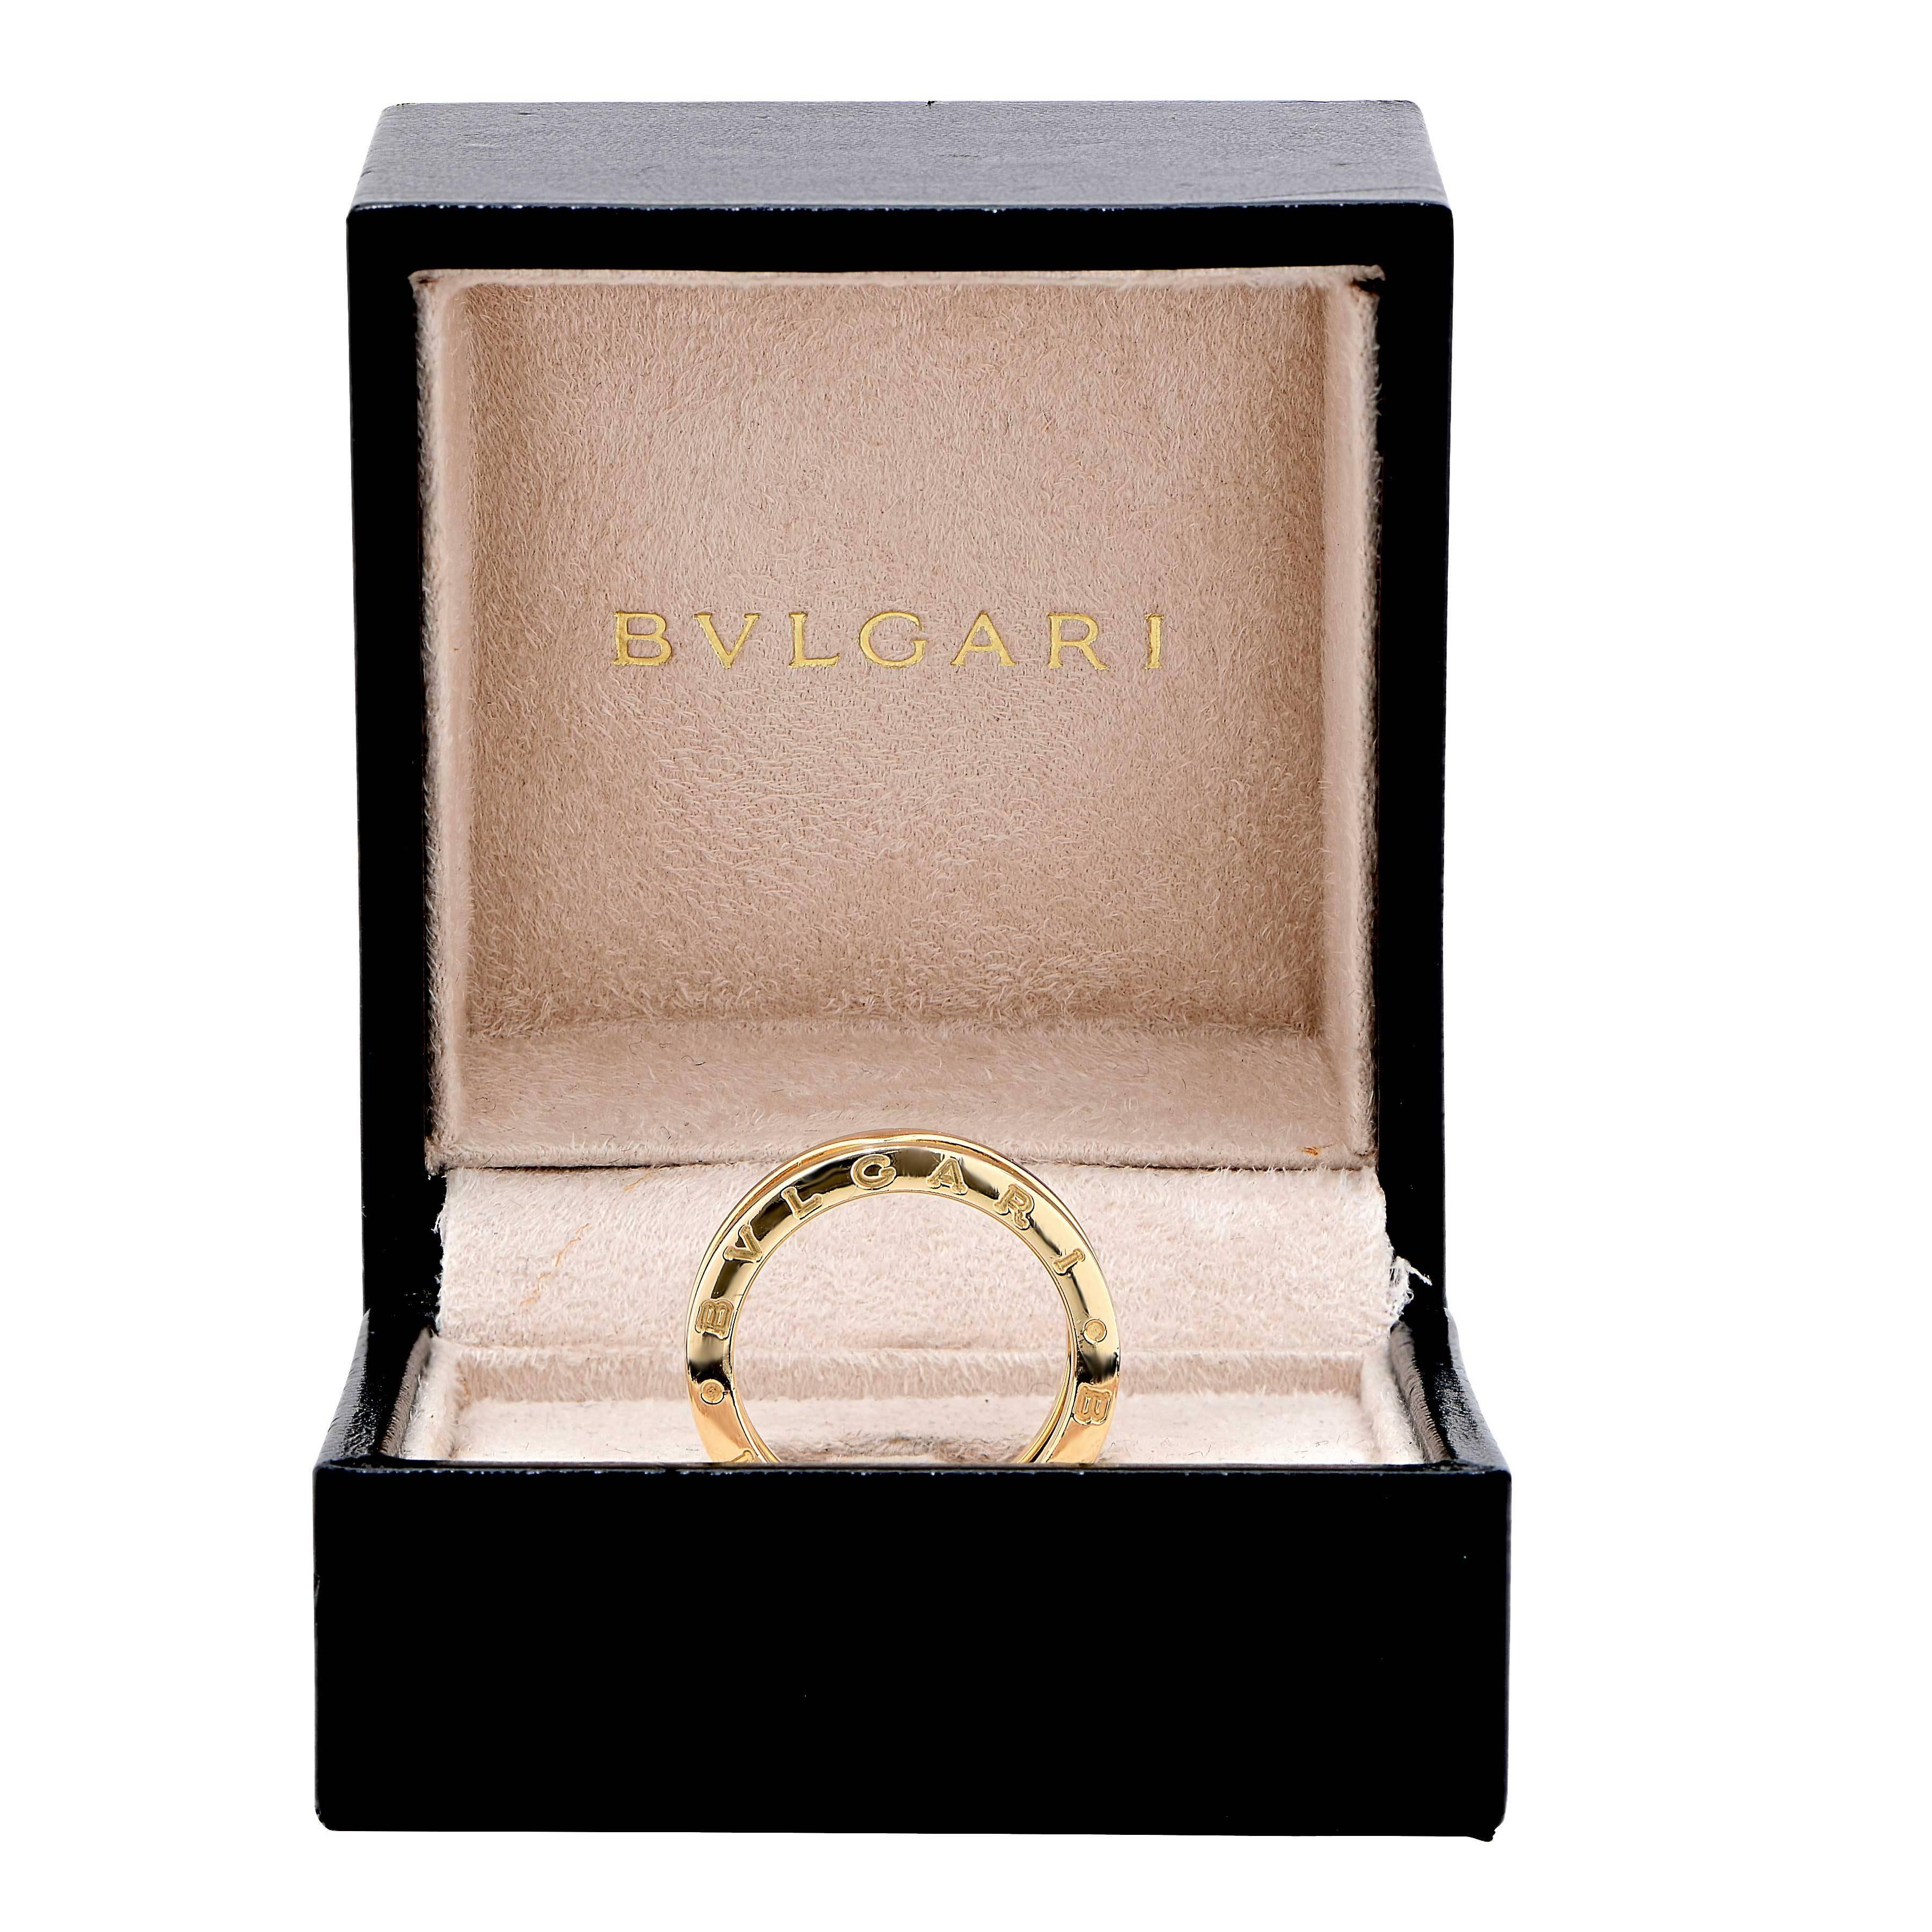 Bulgari BZERO two section ring in 18 karat yellow gold with original box.
Ring Size: 7 1/4
Metal Type: 18 Karat Yellow Gold
Metal Weight: 10.4 Grams